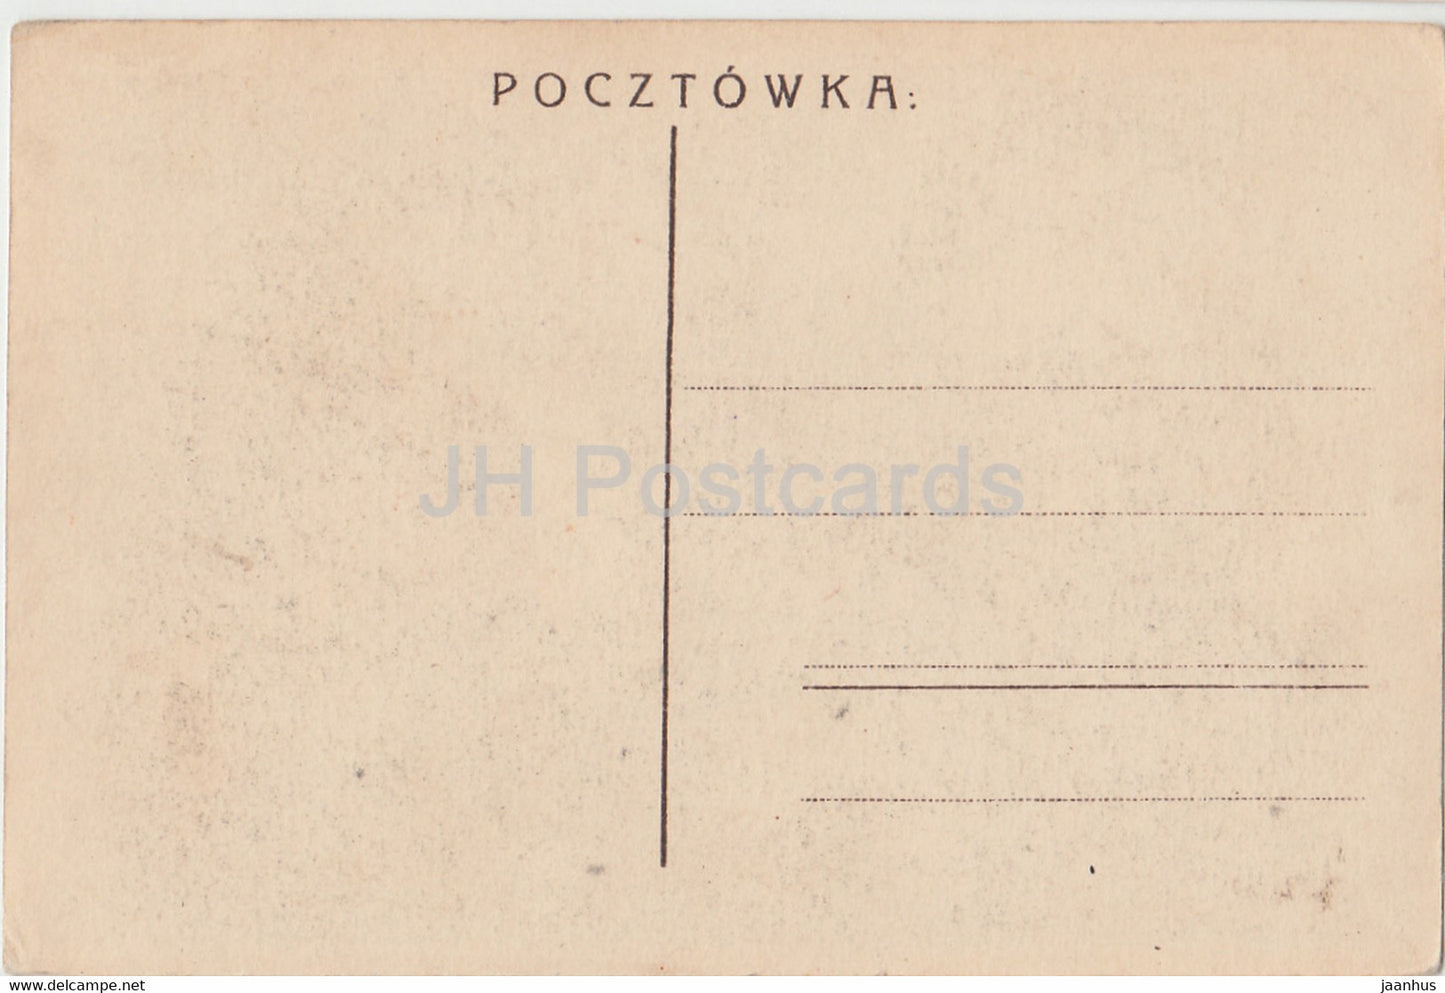 Czestochowa - Klasztor Jasnogorski - Kloster - alte Postkarte - Polen - unbenutzt